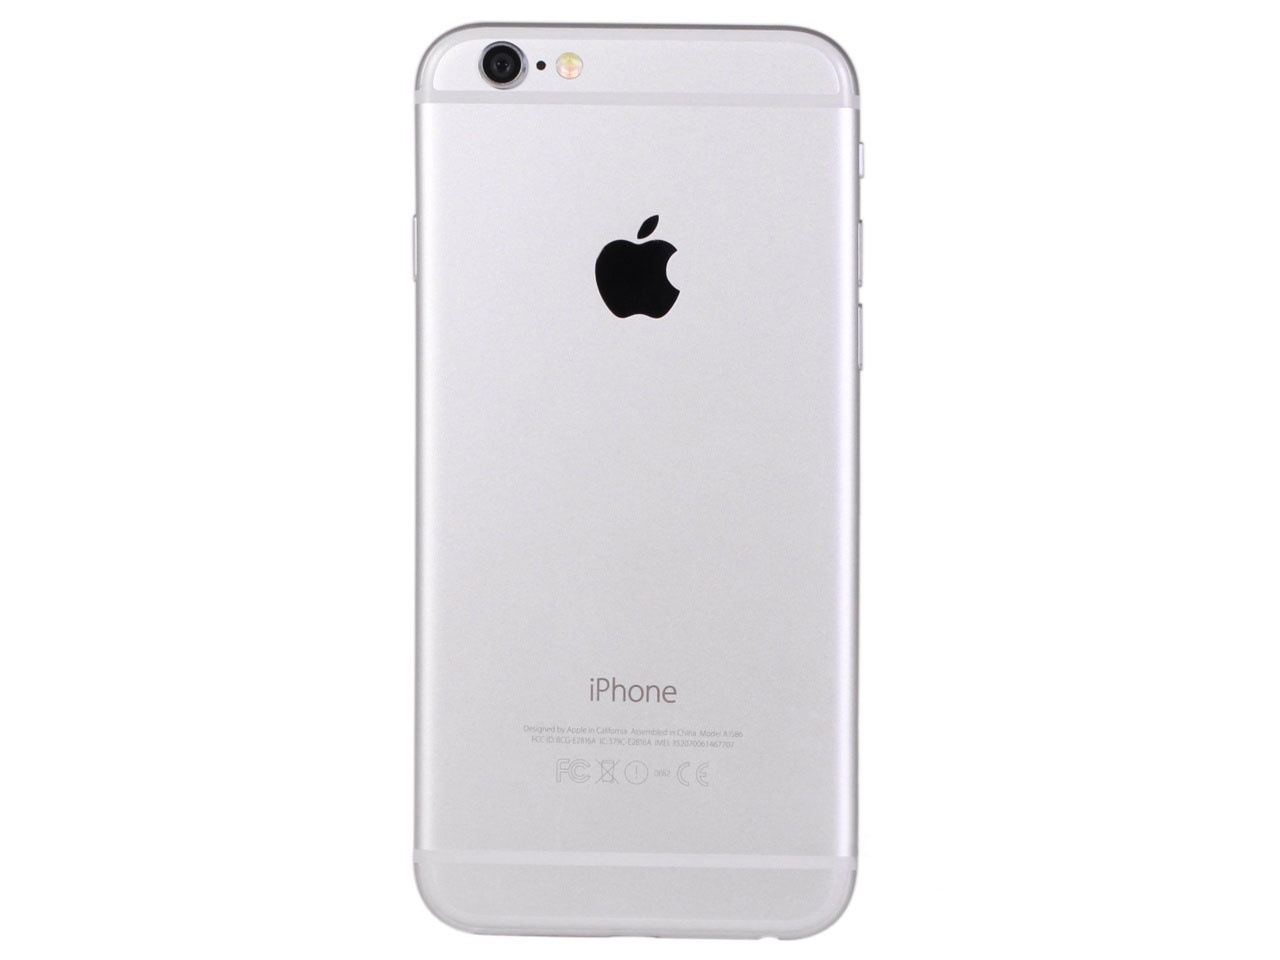 黑色的苹果iphone6 ui手机样式设计psd分层素材下载